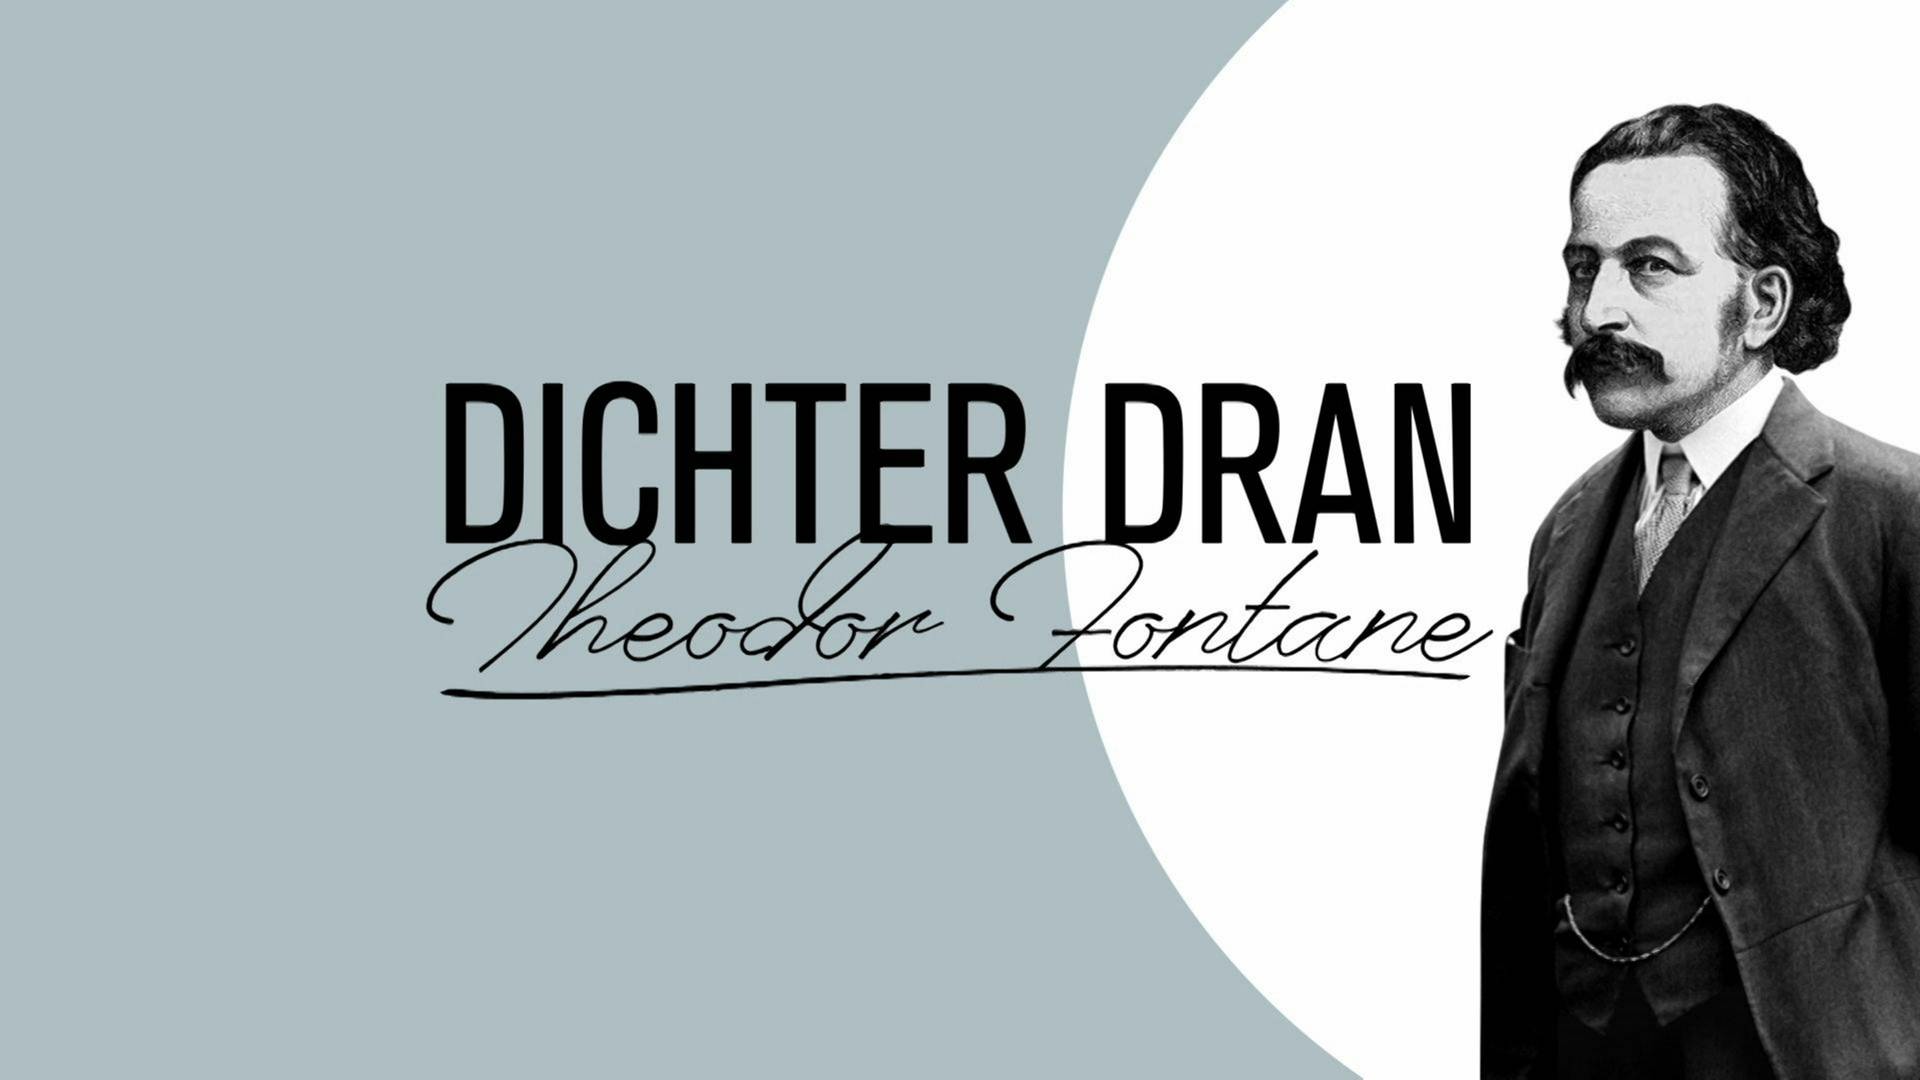 Schwarz weiß Zeichnung von Theodor Fontane, daneben der Schriftzug "DICHTER DRAN - Theodor Fontane".